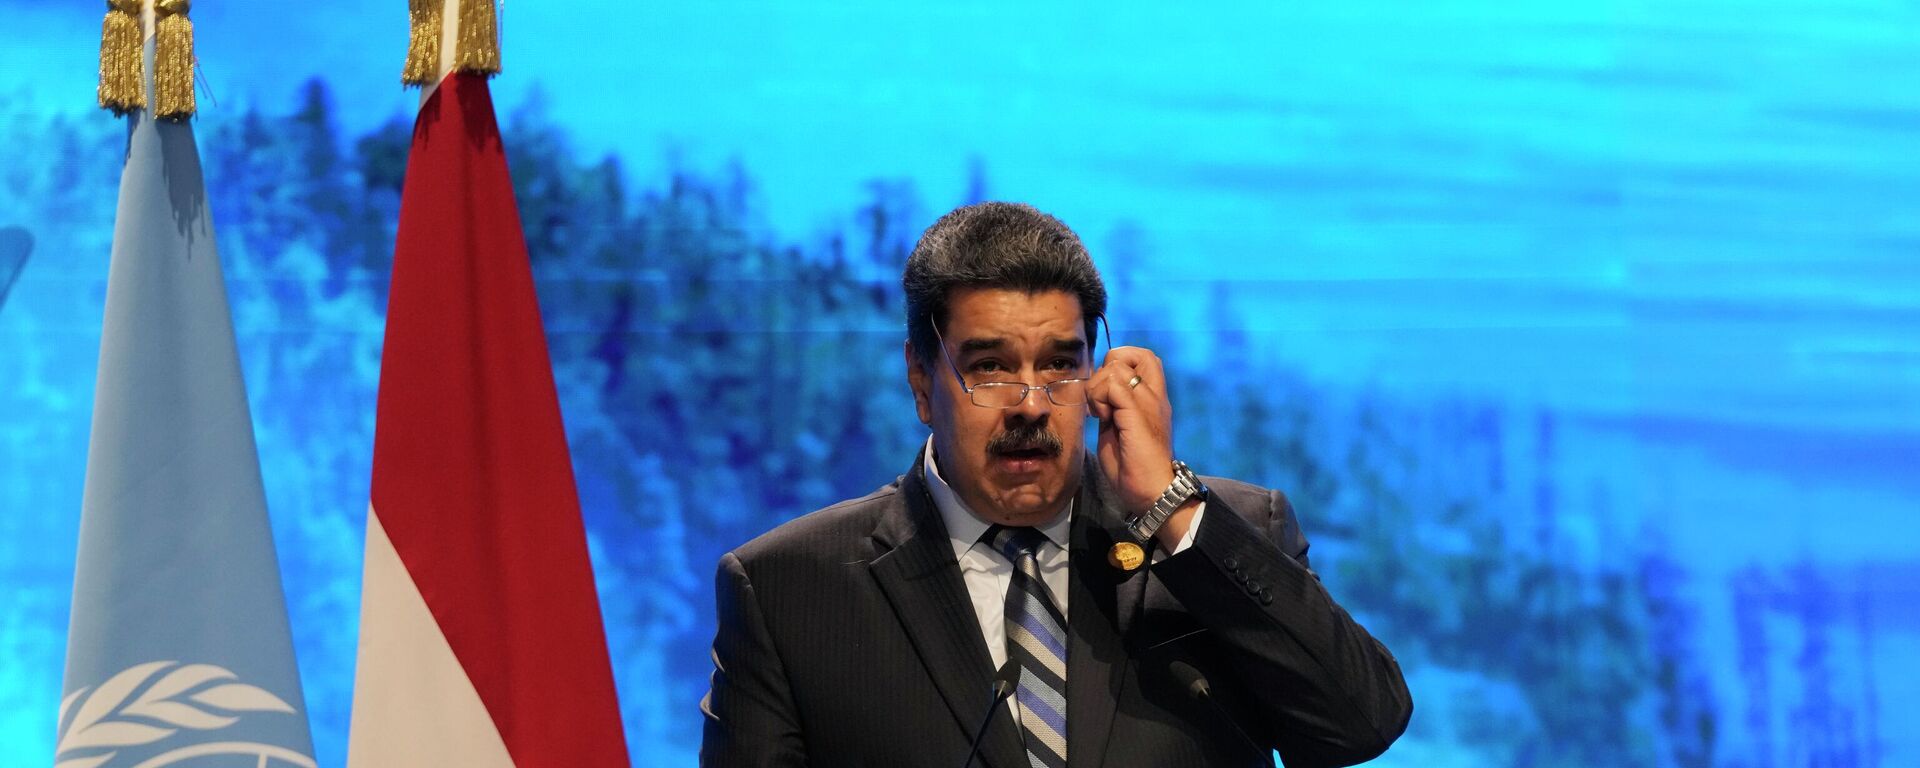 Nicolás Maduro, el presidente de Venezuela en la 27 Conferencia de las Partes (COP27) de la Convención Marco de las Naciones Unidas sobre el Cambio Climático - Sputnik Mundo, 1920, 17.11.2022